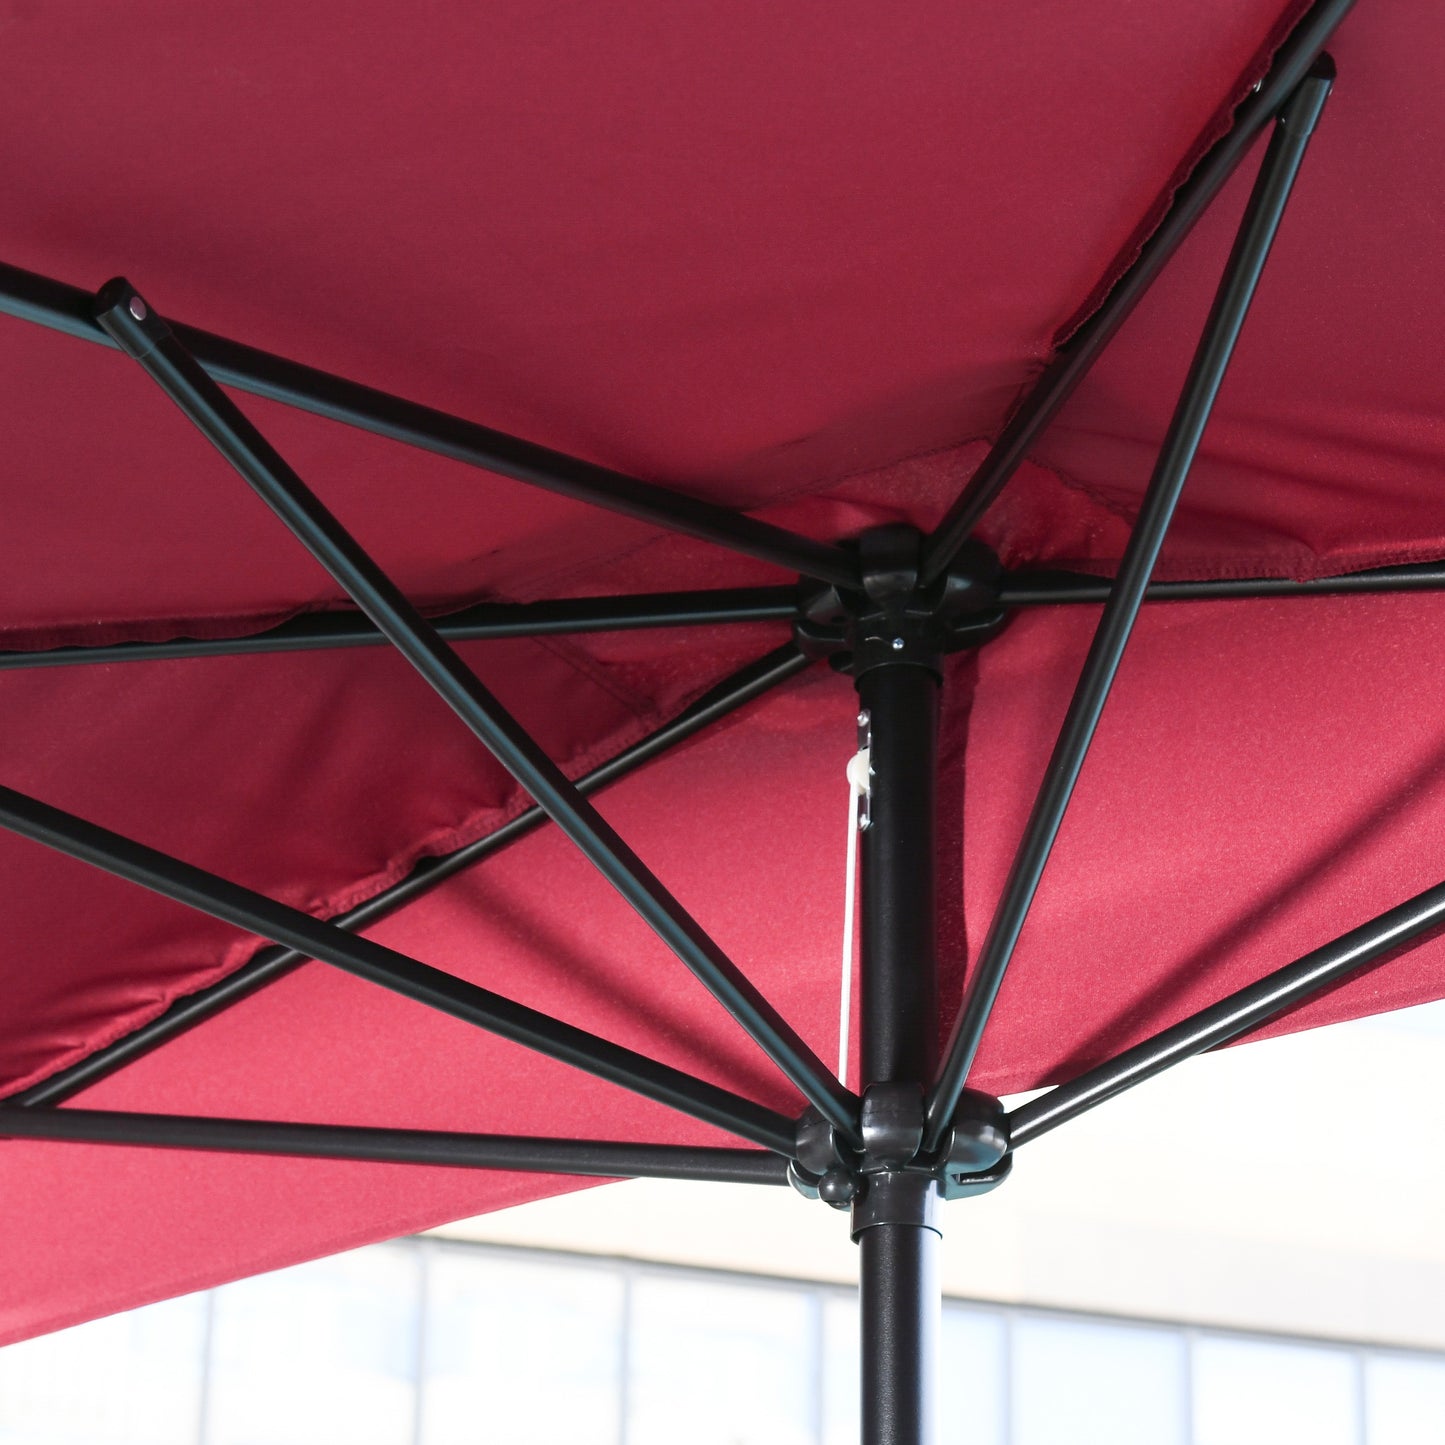 Outsunny 2.3m Half Round Parasol Umbrella Balcony Metal Frame Outdoor NO BASE Green